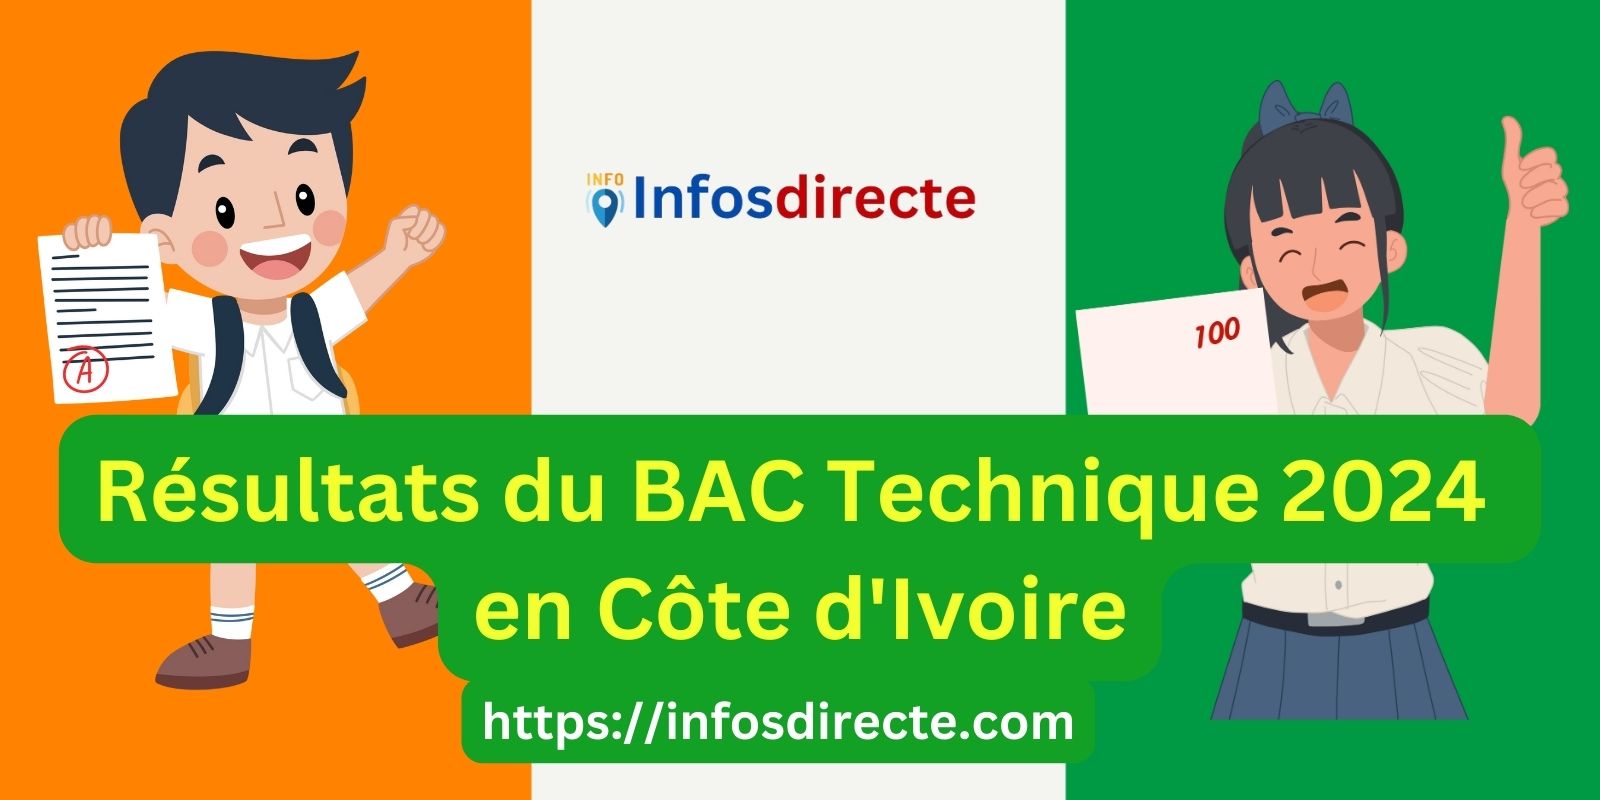 Résultats du BAC Technique 2024 en Côte d'Ivoire